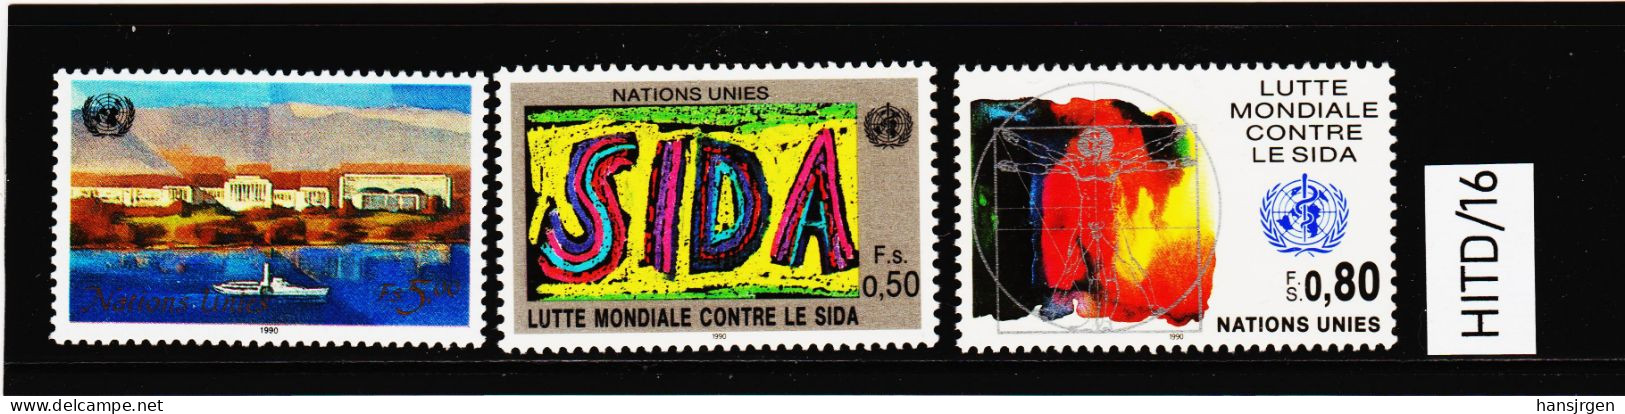 HITD/16 UNO GENF 1990  MICHL 183/85 ** Postfrisch Siehe ABBILBUNG - Unused Stamps